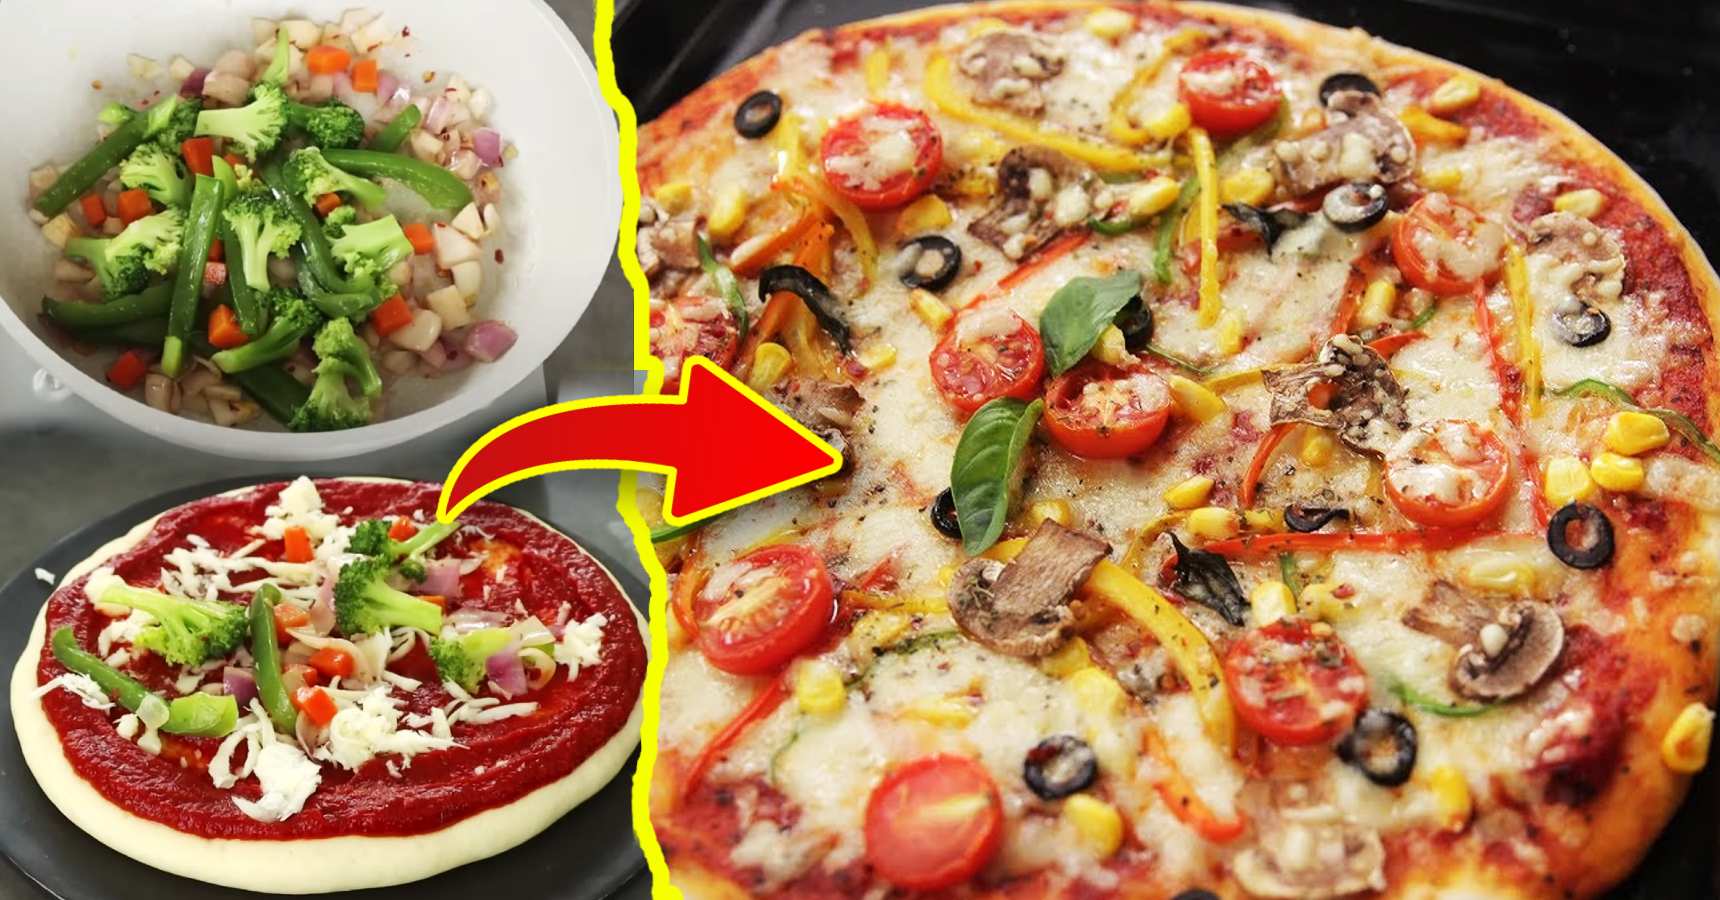 বাড়িতেই ভেজ পিৎজা তৈরির রেসিপি, How to Cook Veg Pizza at Home Recipe